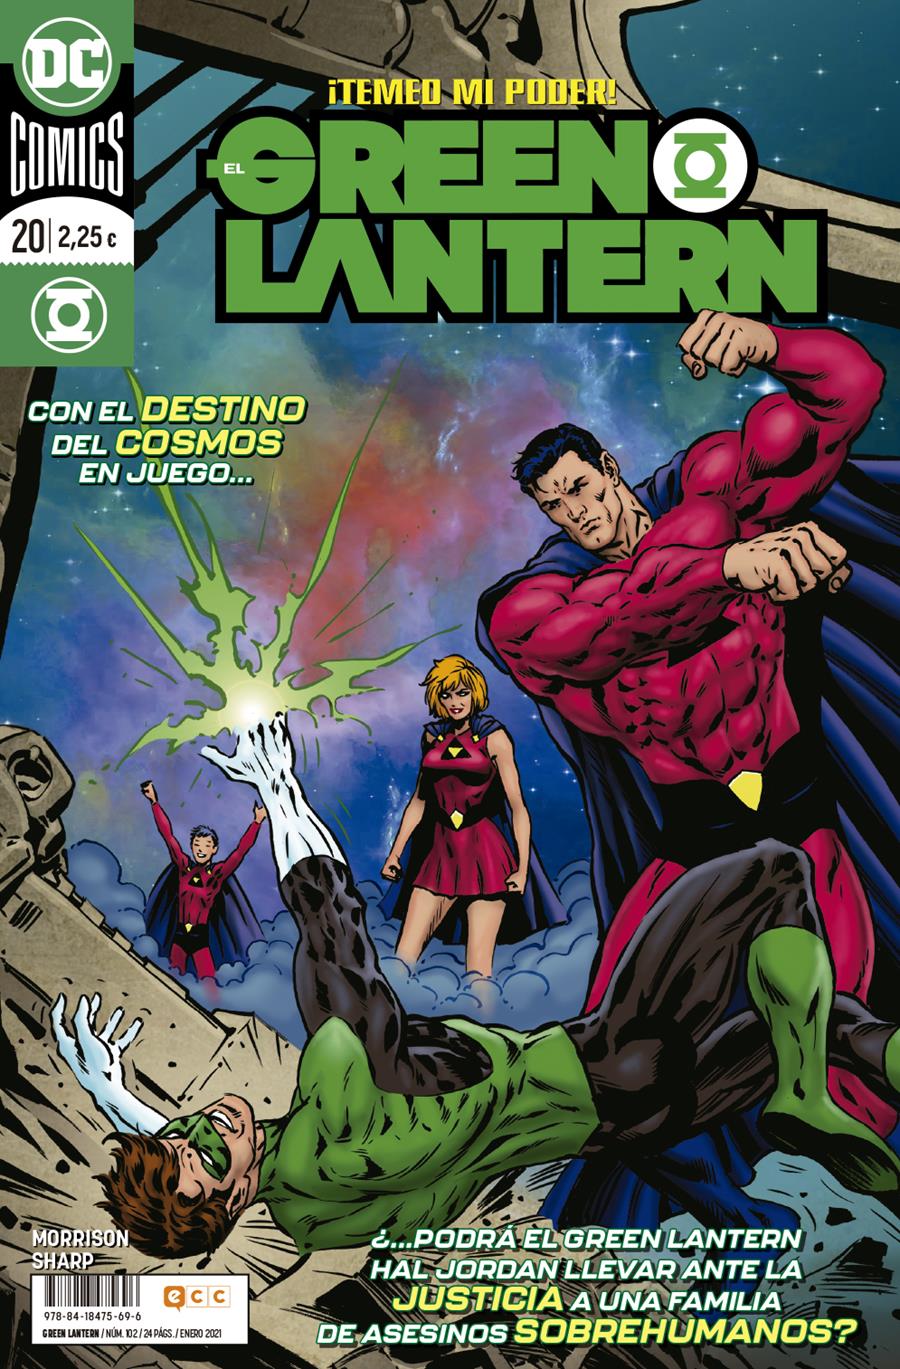 El Green Lantern núm. 102/ 20 | N0121-ECC24 | Grant Morrison / Liam Sharp | Terra de Còmic - Tu tienda de cómics online especializada en cómics, manga y merchandising